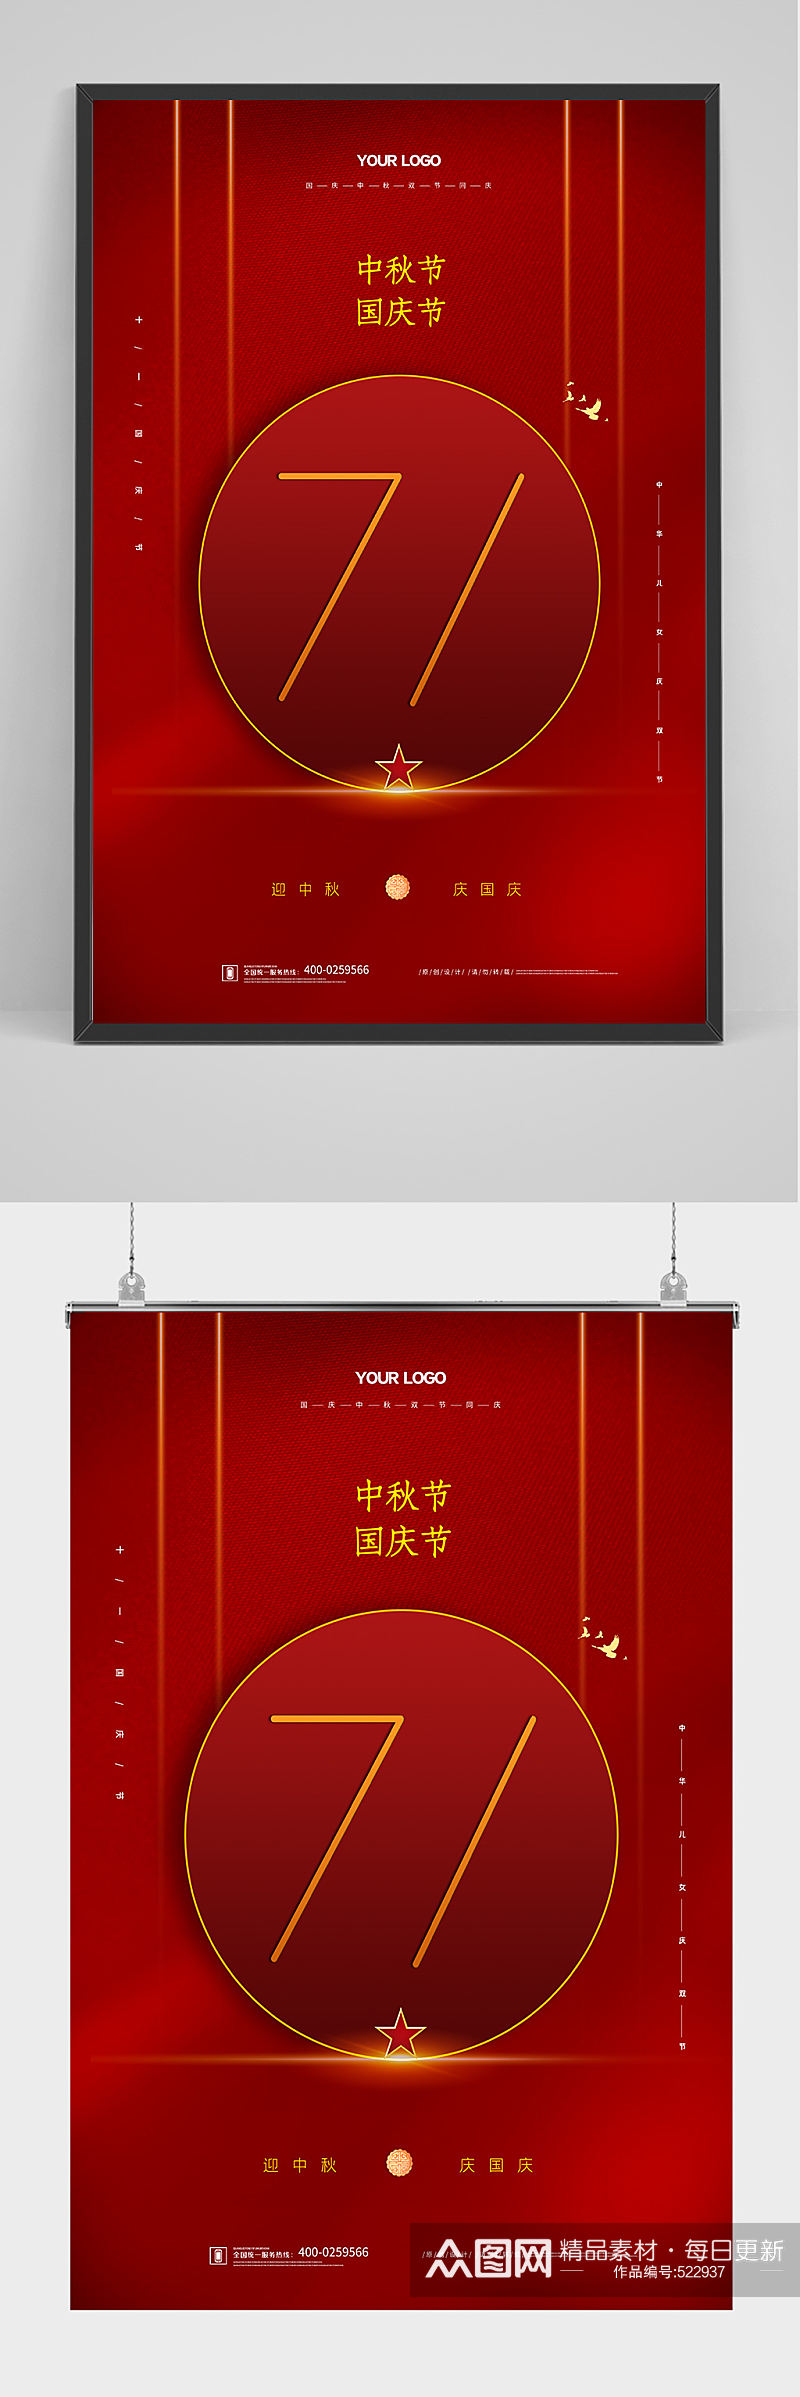 庆祝中国建国71周年海报设计素材